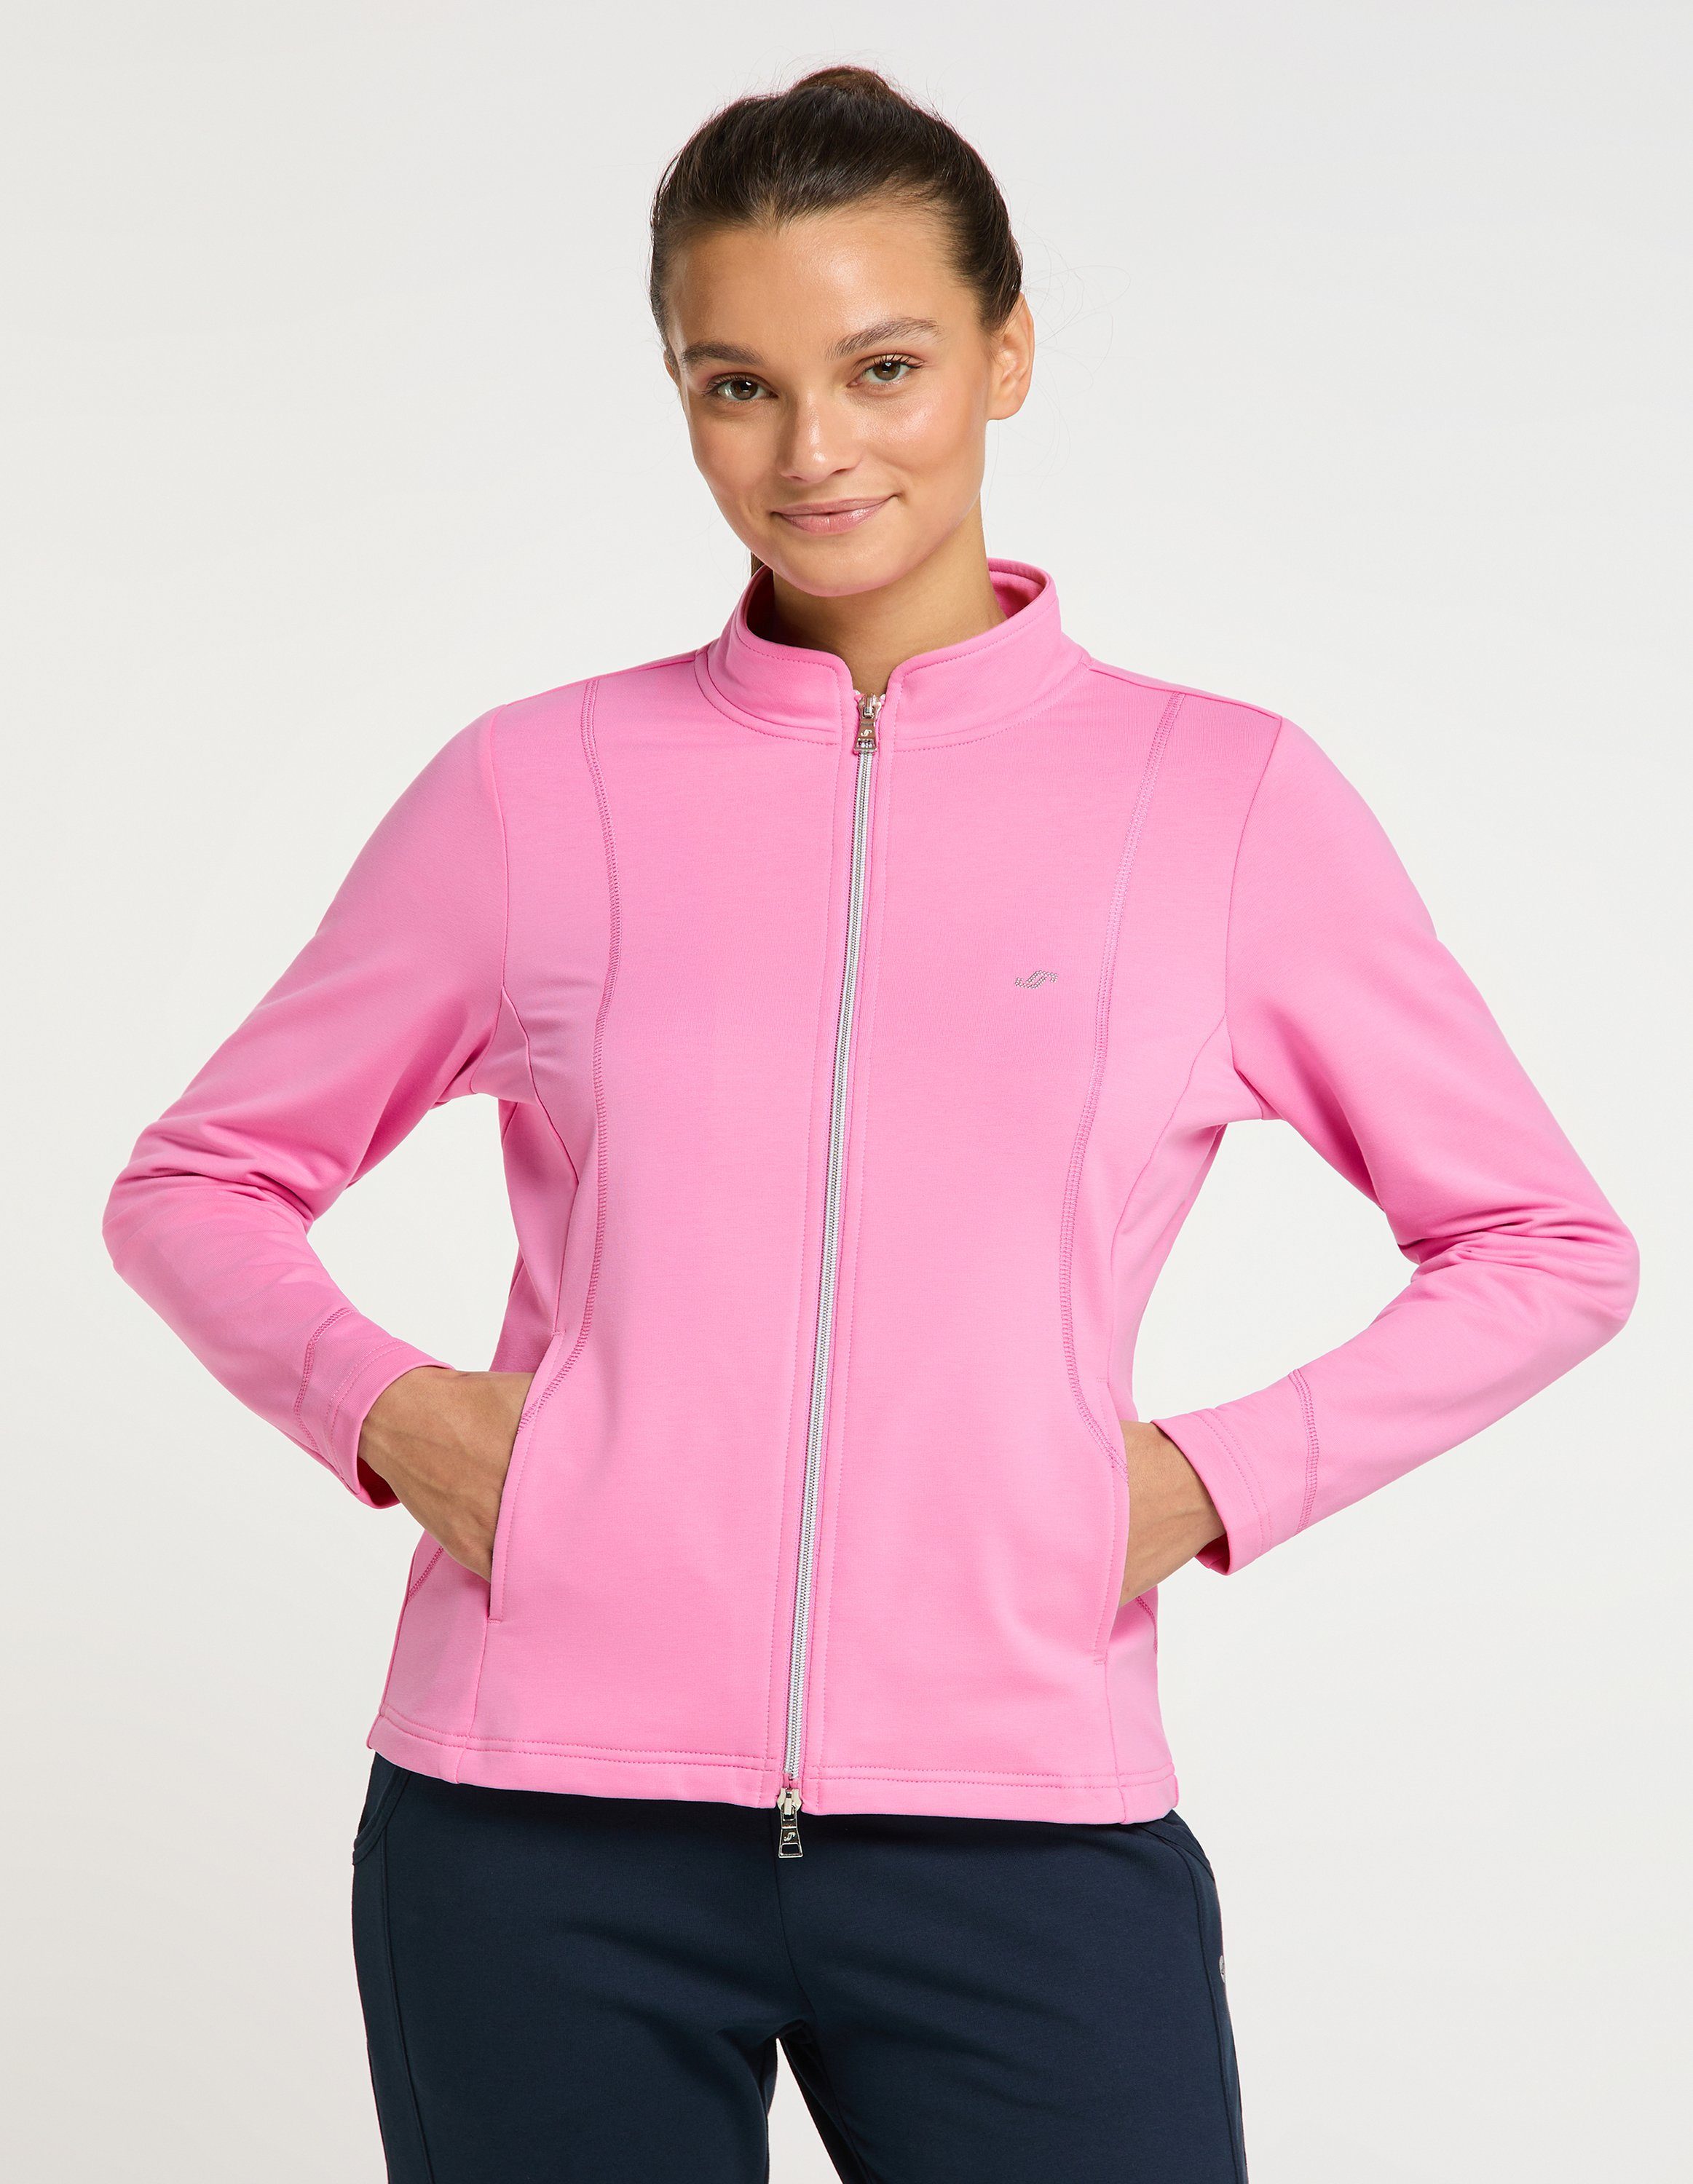 pink DORIT Joy cyclam Trainingsjacke Sportswear Jacke